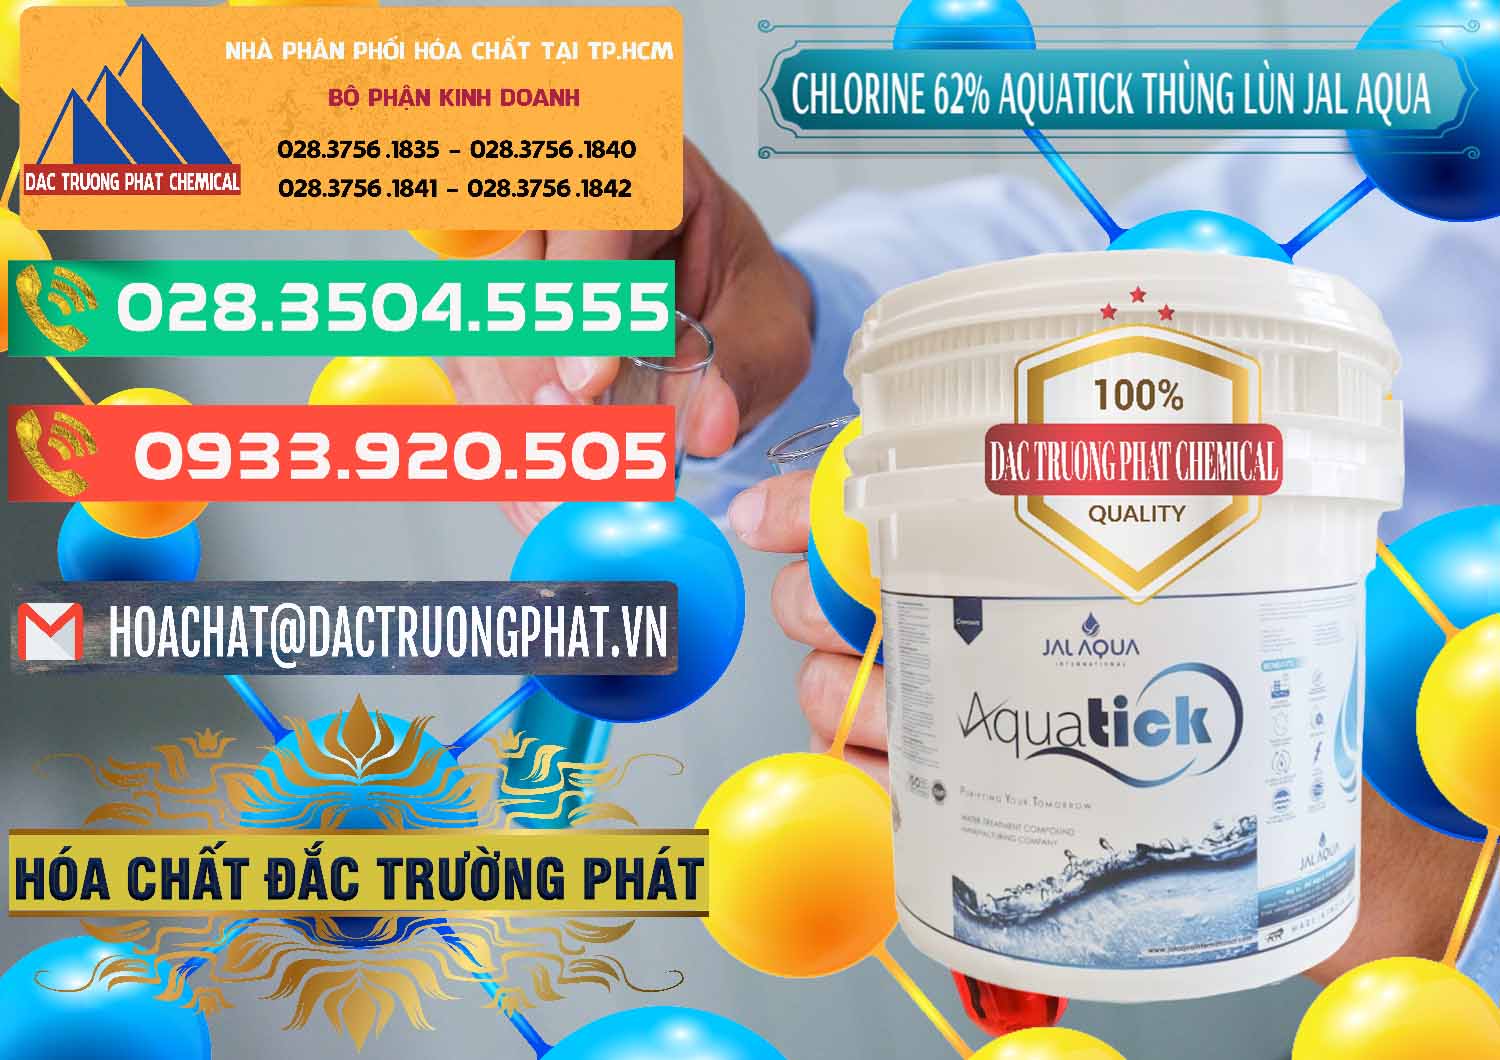 Nơi bán - phân phối Chlorine – Clorin 62% Aquatick Thùng Lùn Jal Aqua Ấn Độ India - 0238 - Chuyên nhập khẩu & phân phối hóa chất tại TP.HCM - congtyhoachat.com.vn